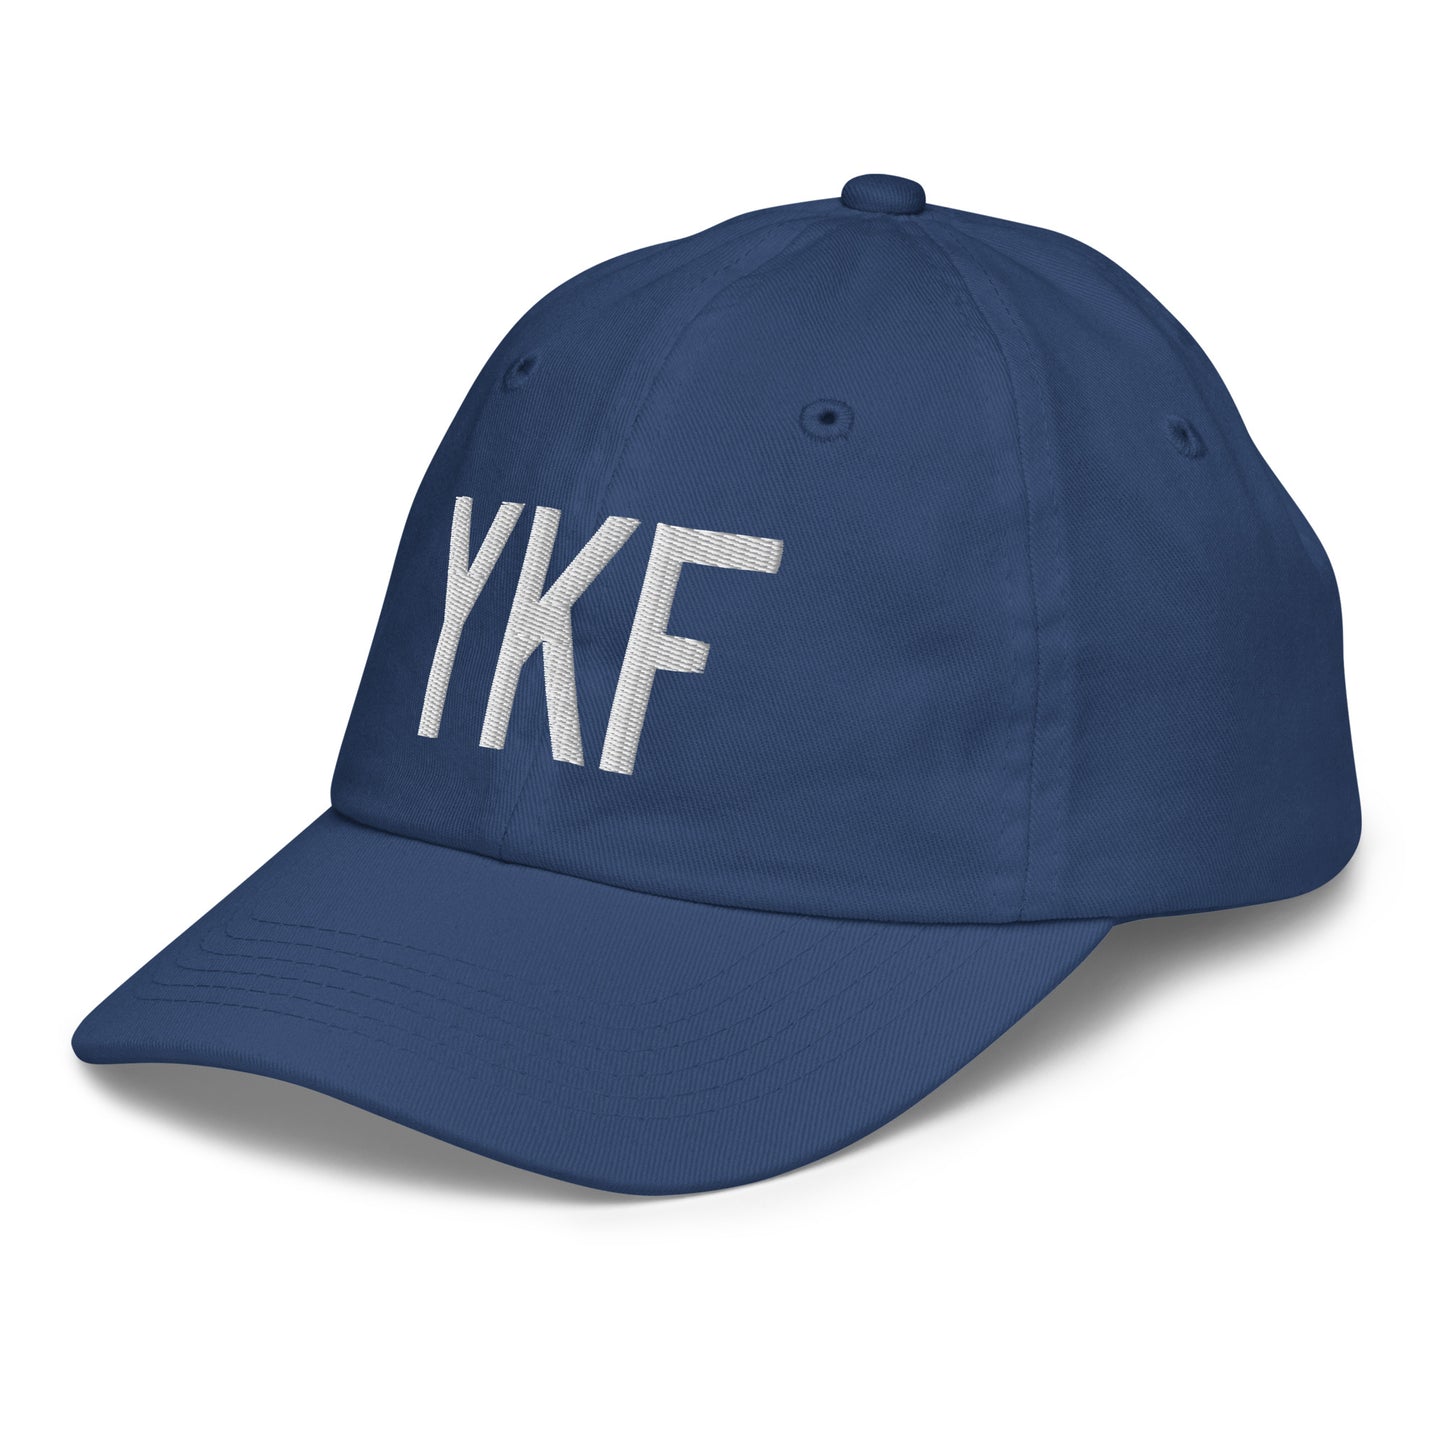 Airport Code Kid's Baseball Cap - White • YKF Waterloo • YHM Designs - Image 01